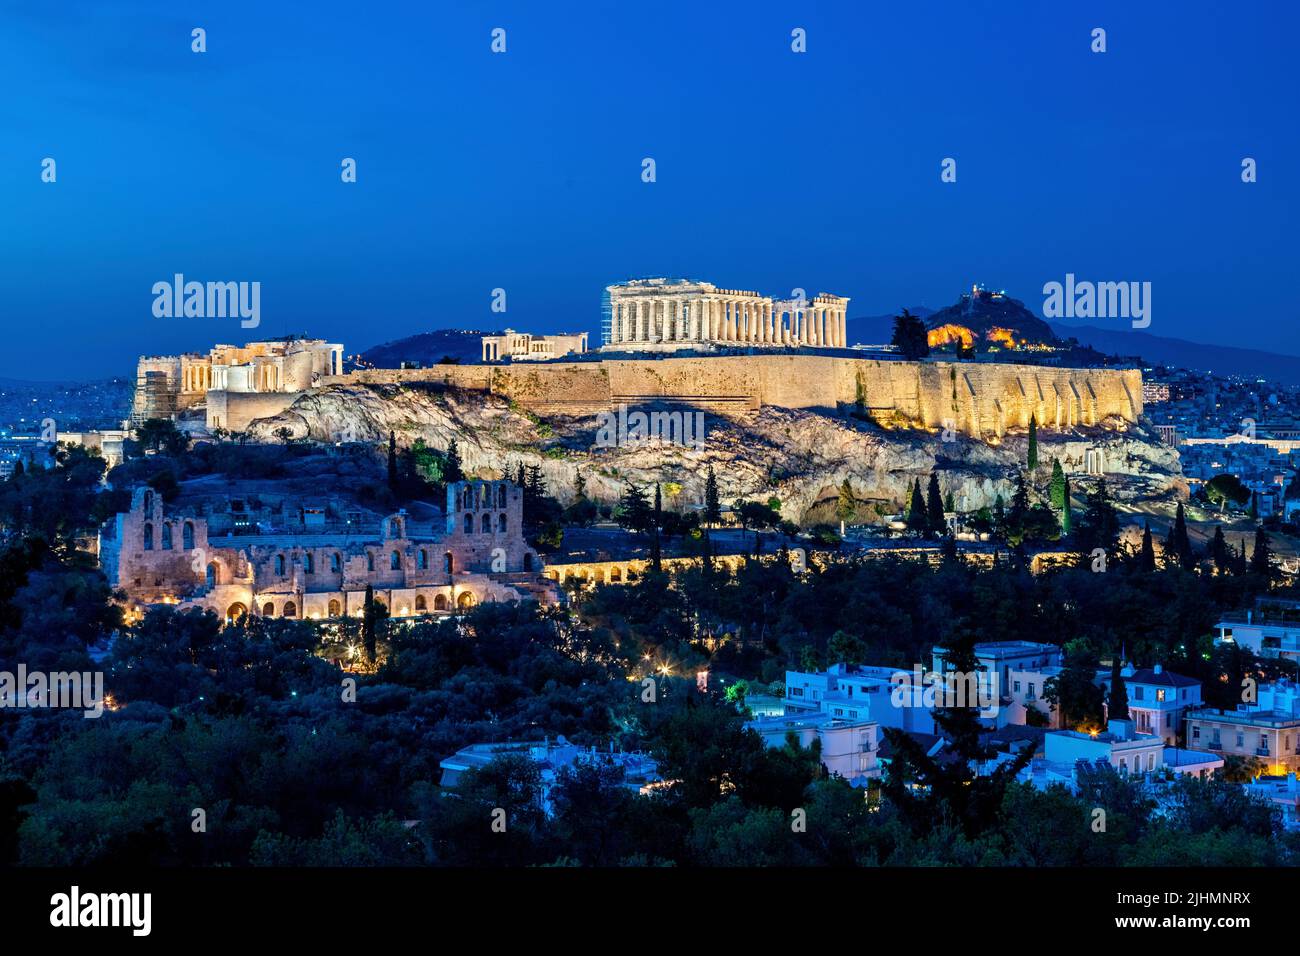 La Acrópolis de Atenas en la 'hora azul'. Usted puede ver el Partenón, el Erecteión y la Propilea. También se puede ver el Herodeum. Foto de stock